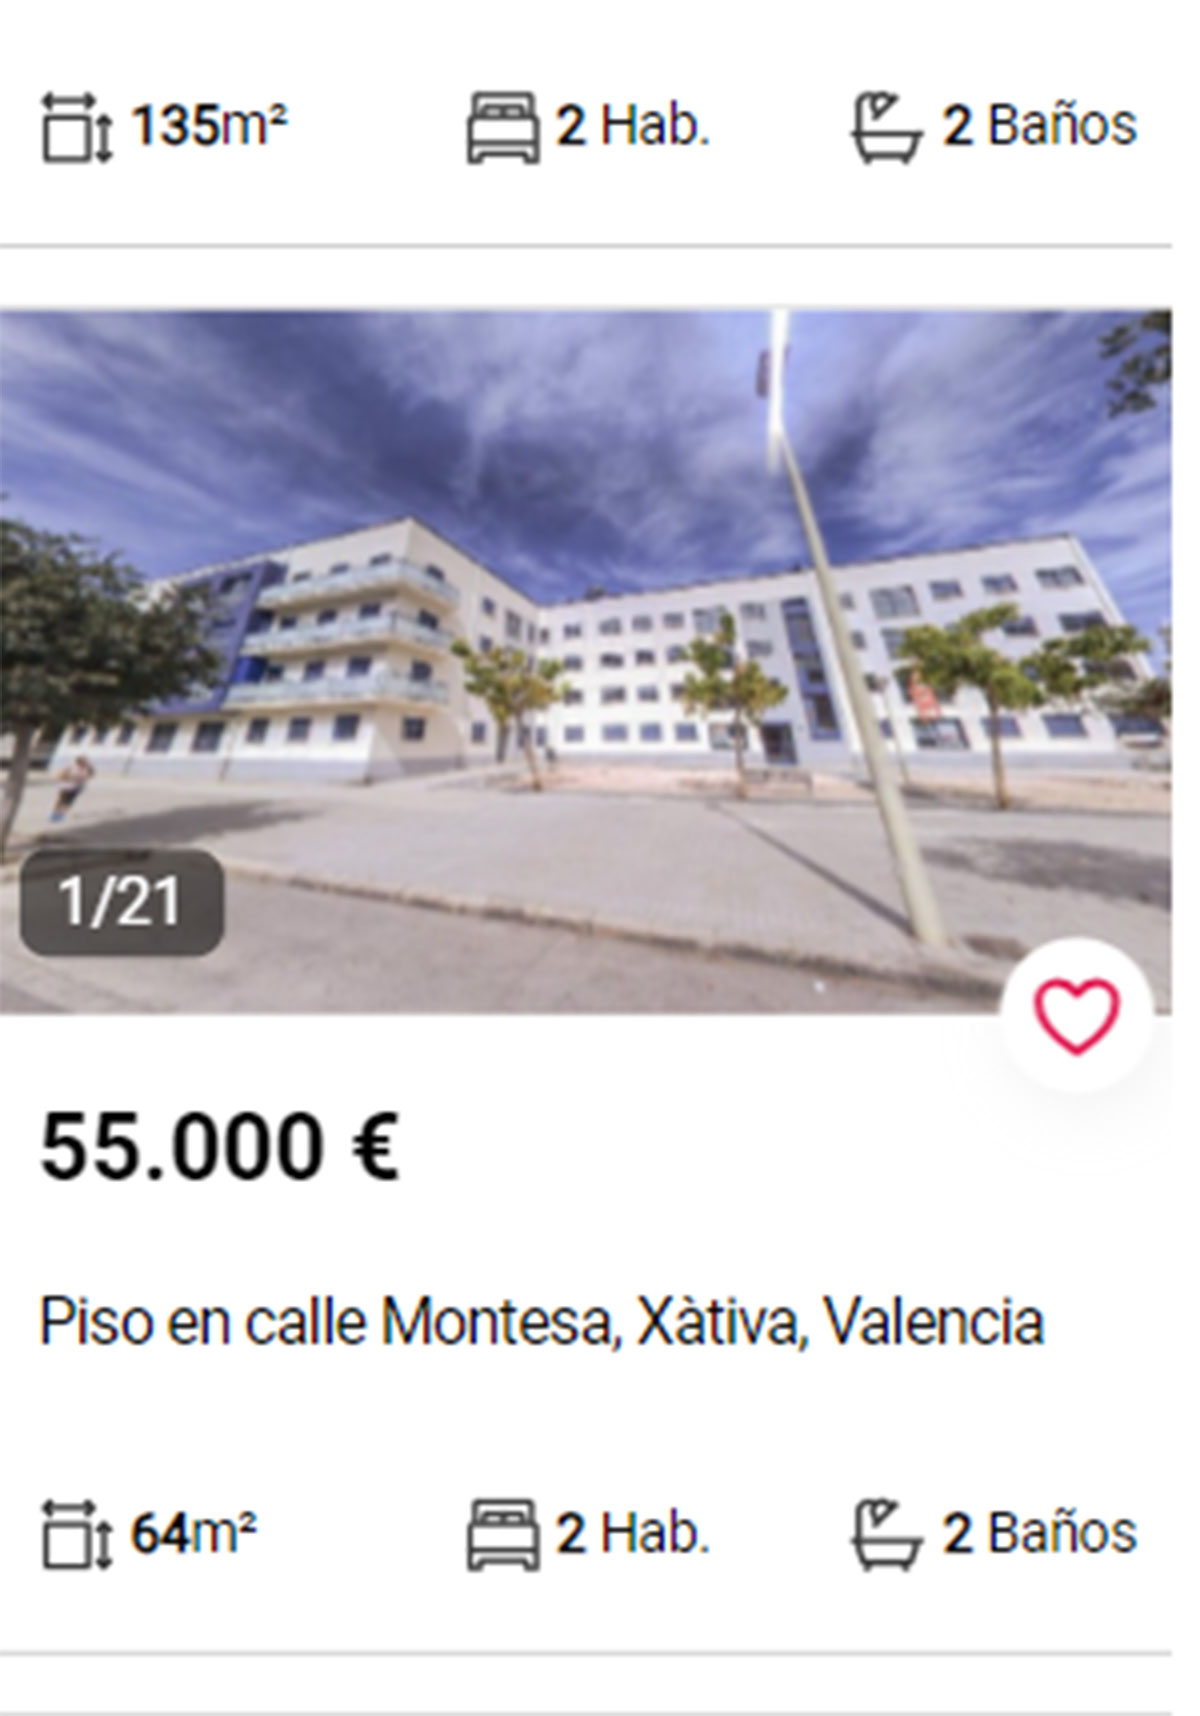 Piso en Valencia por 55.000 euros